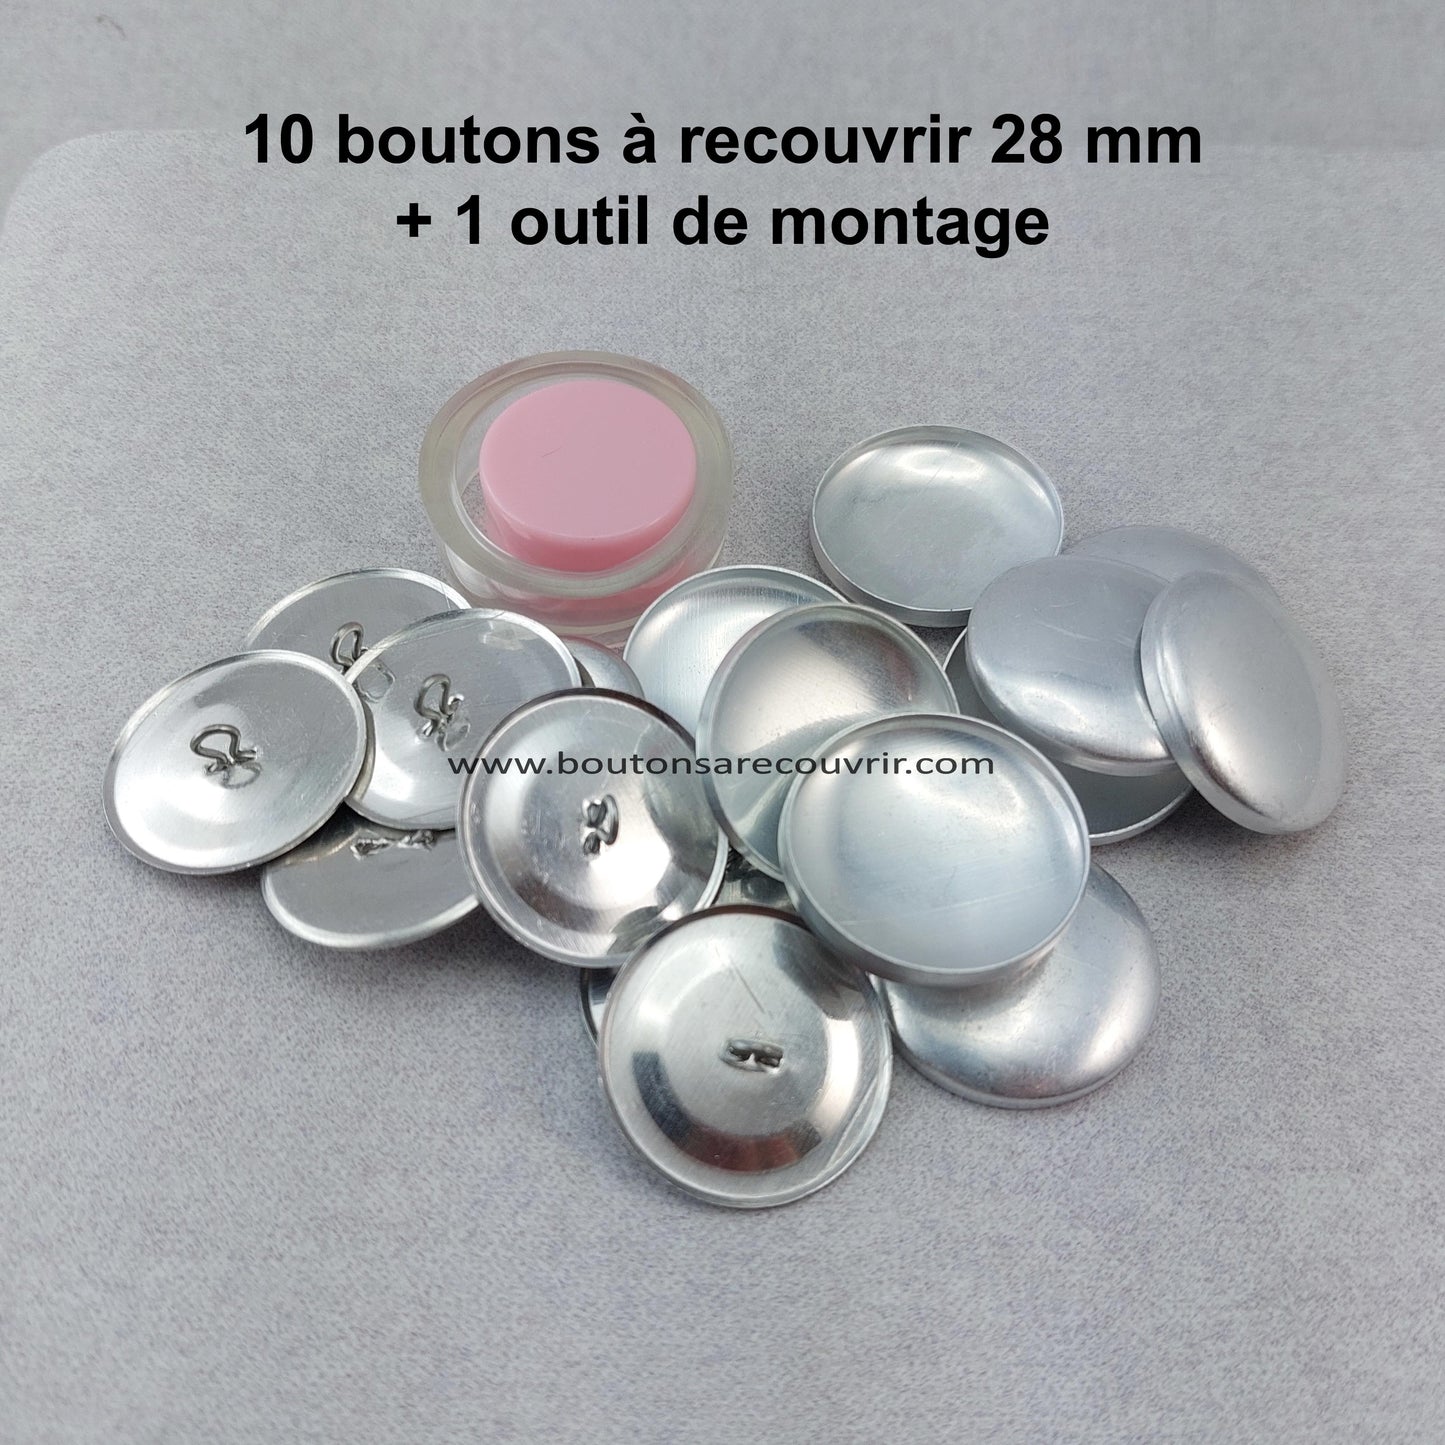 10 boutons à recouvrir 28 mm avec outil de montage